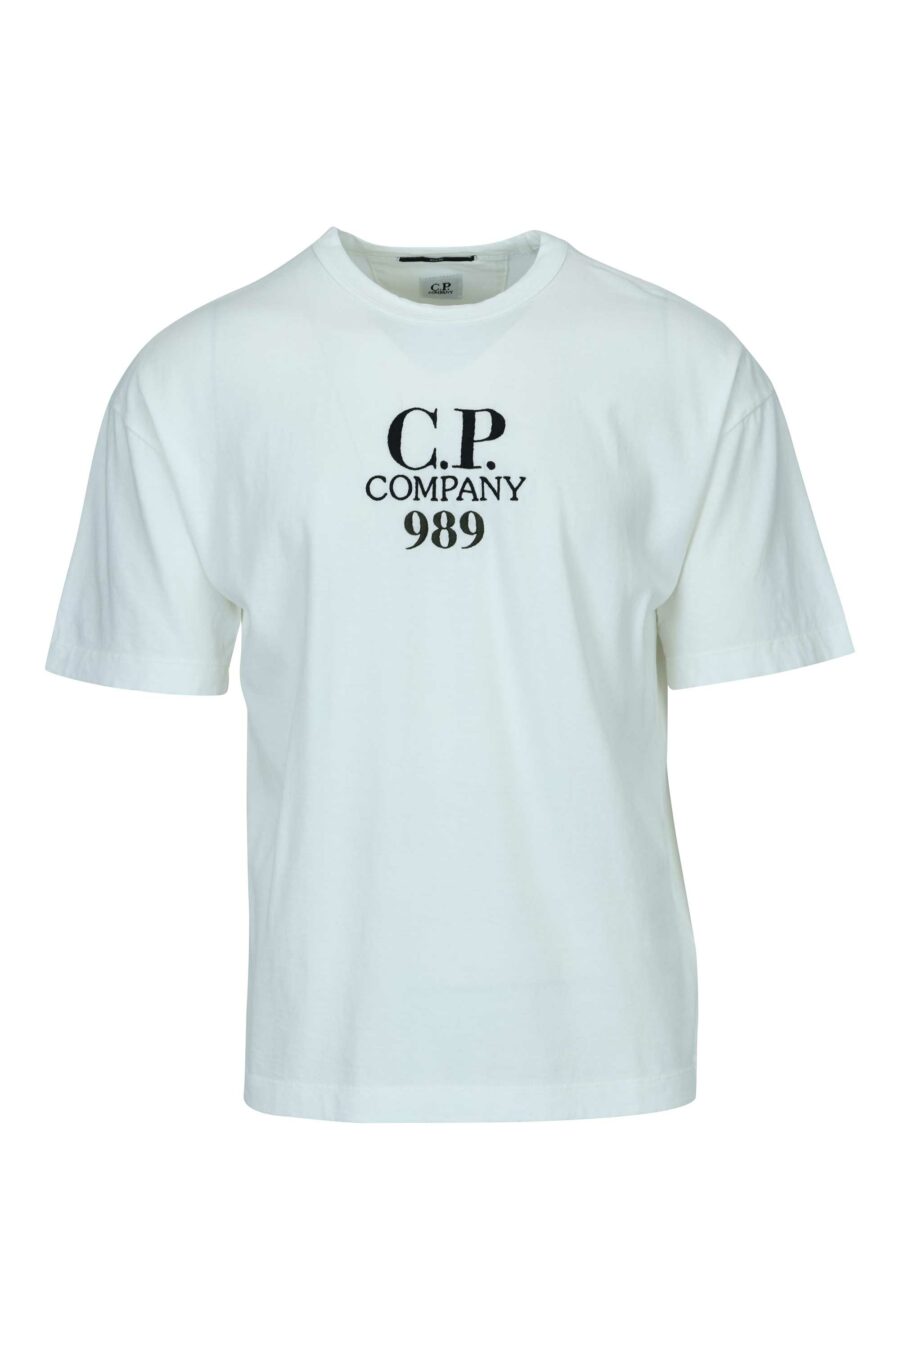 Camiseta blanca "oversize" con minilogo "cp 989" - 7620943818840